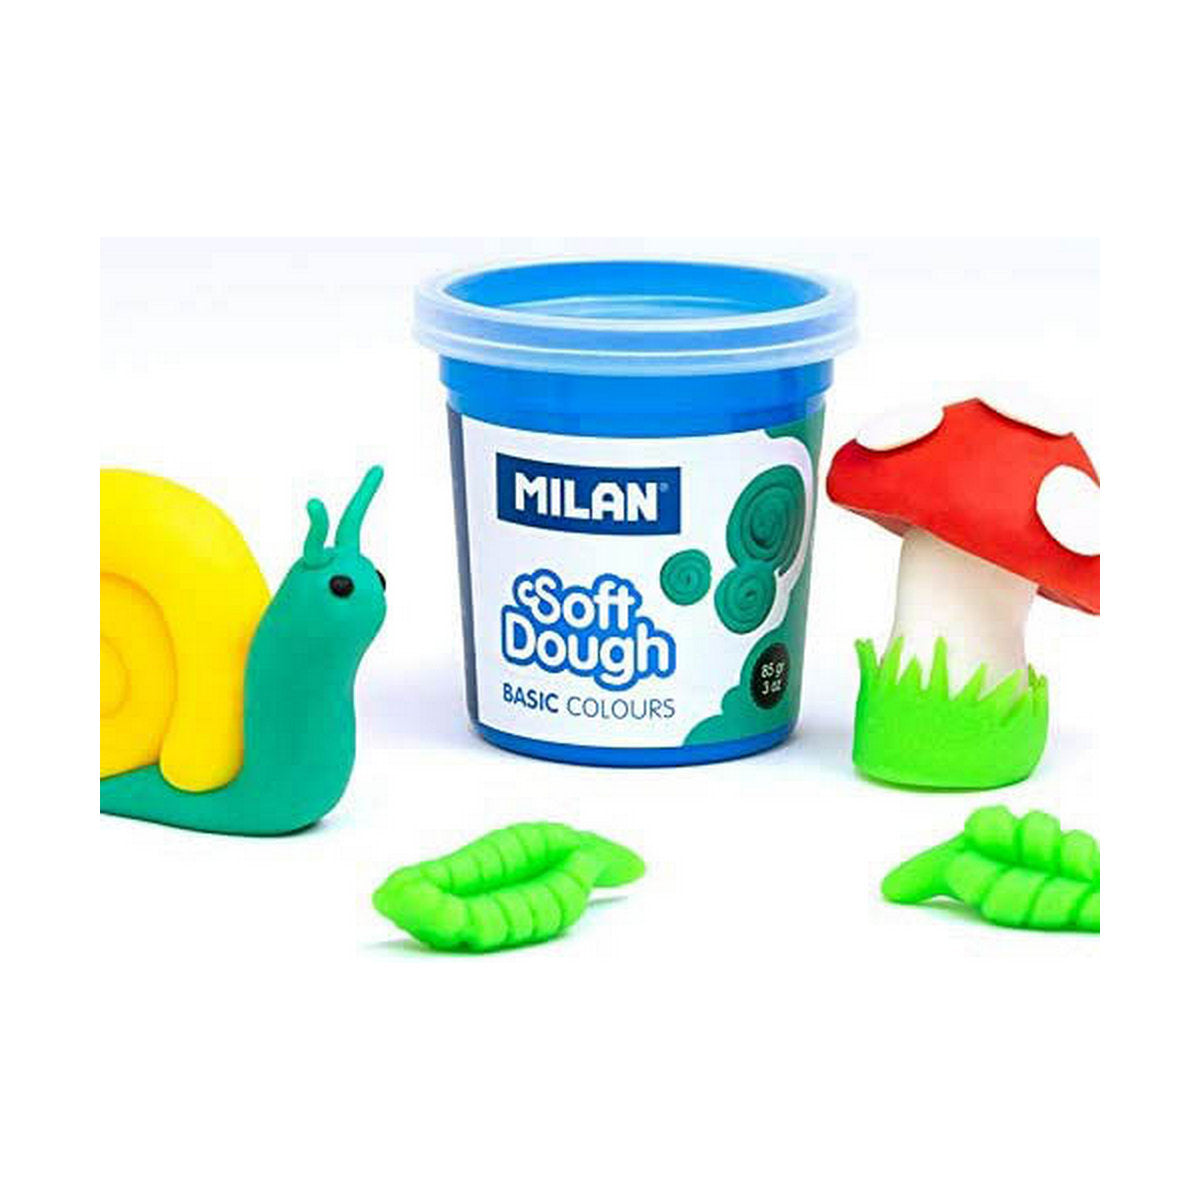 Modellera Spel Milan Soft dough 913510B Gul Blå Multicolour 85 g Grönsak (10 antal)-Leksaker och spel, Kreativa aktiviteter-Milan-peaceofhome.se